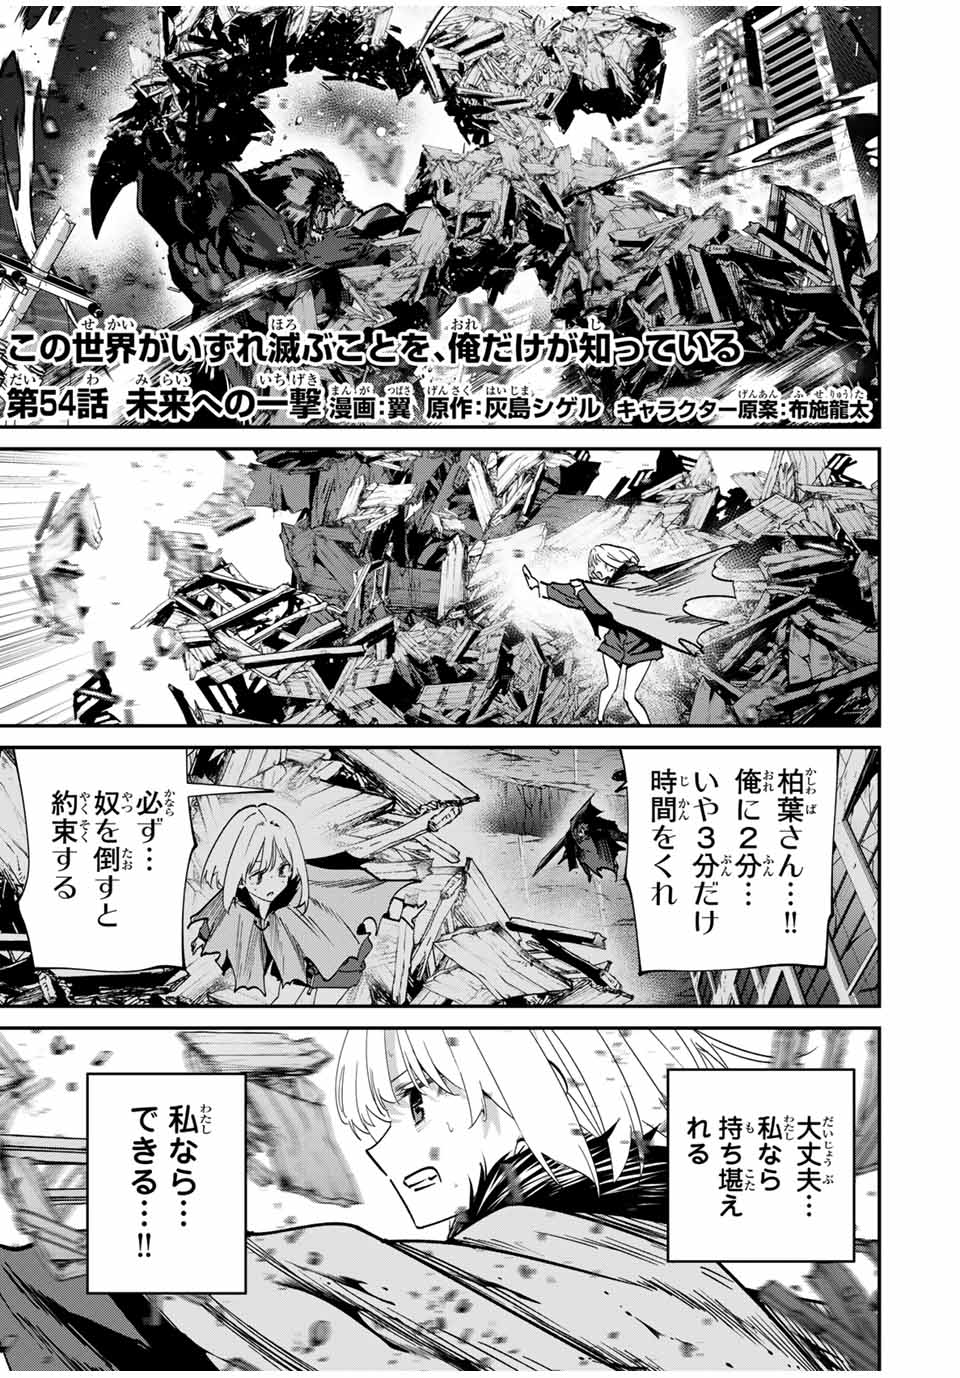 Kono Sekai ga Izure Horobu Koto wo, Ore dake ga Shitte Iru - Chapter 54 - Page 1